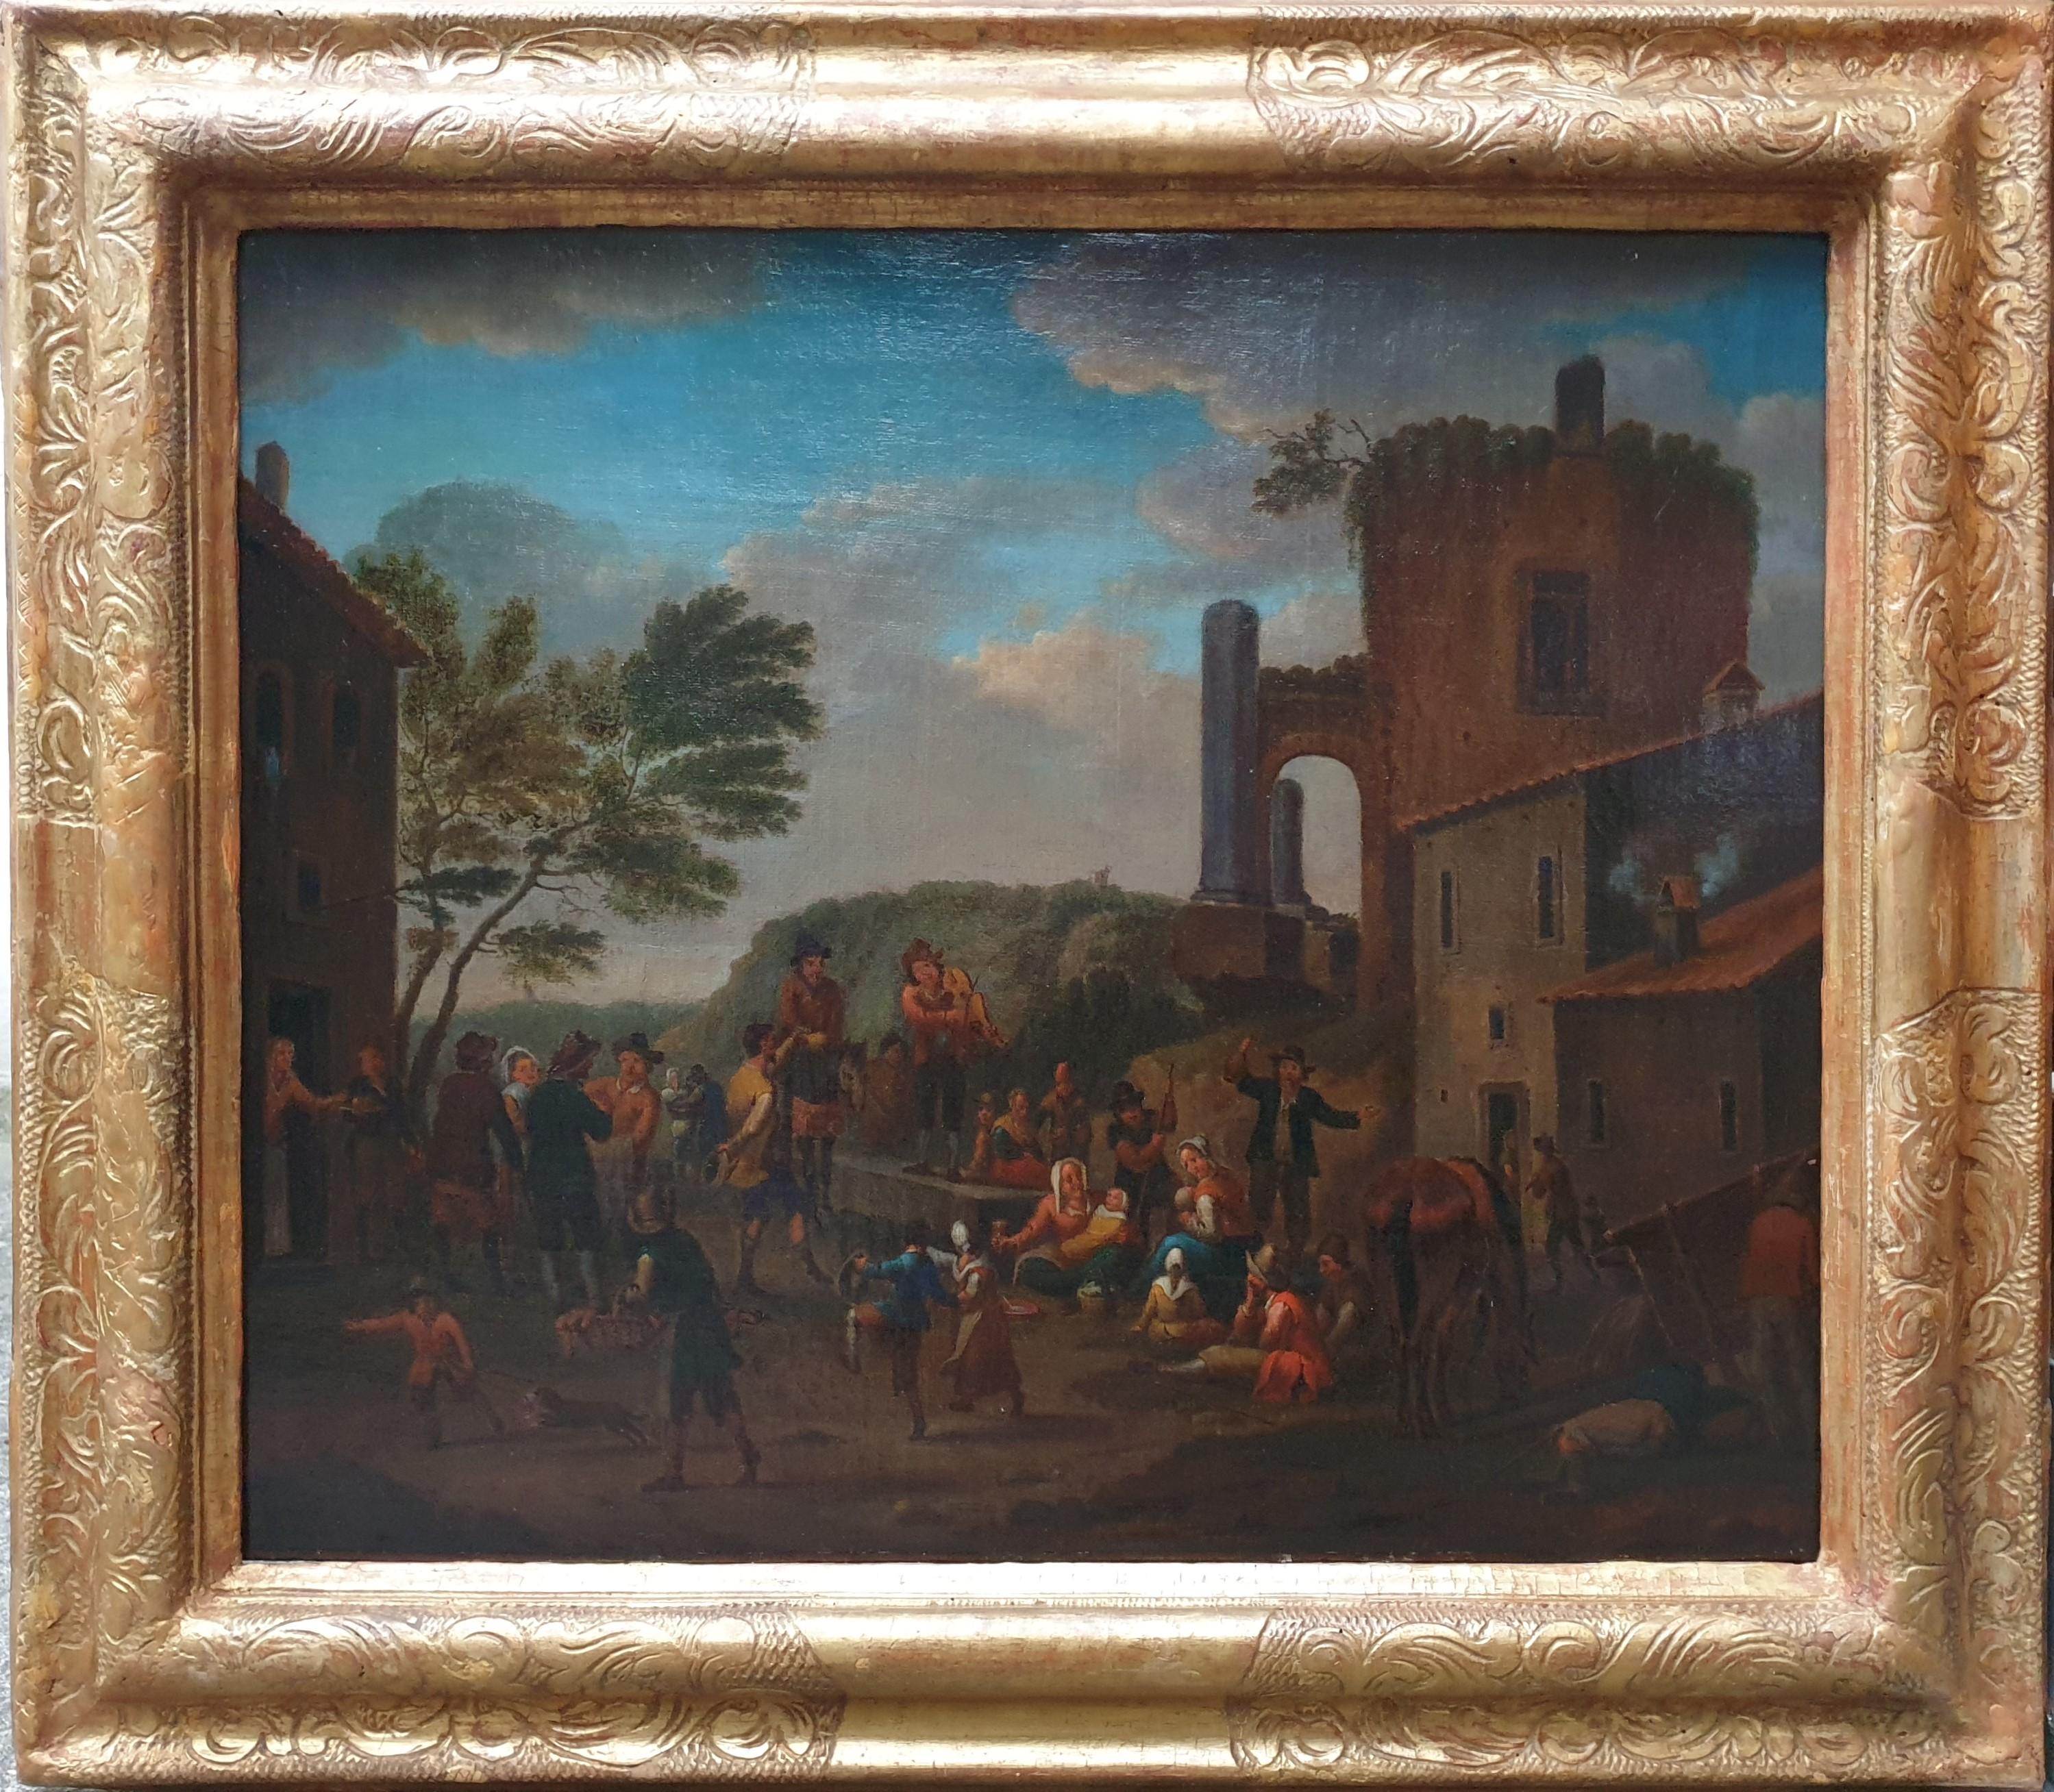 Johannes JANSON Landscape Painting - Dutch genre painting  18th JANSON Oil on canvas Village fair peasants Kermesse 